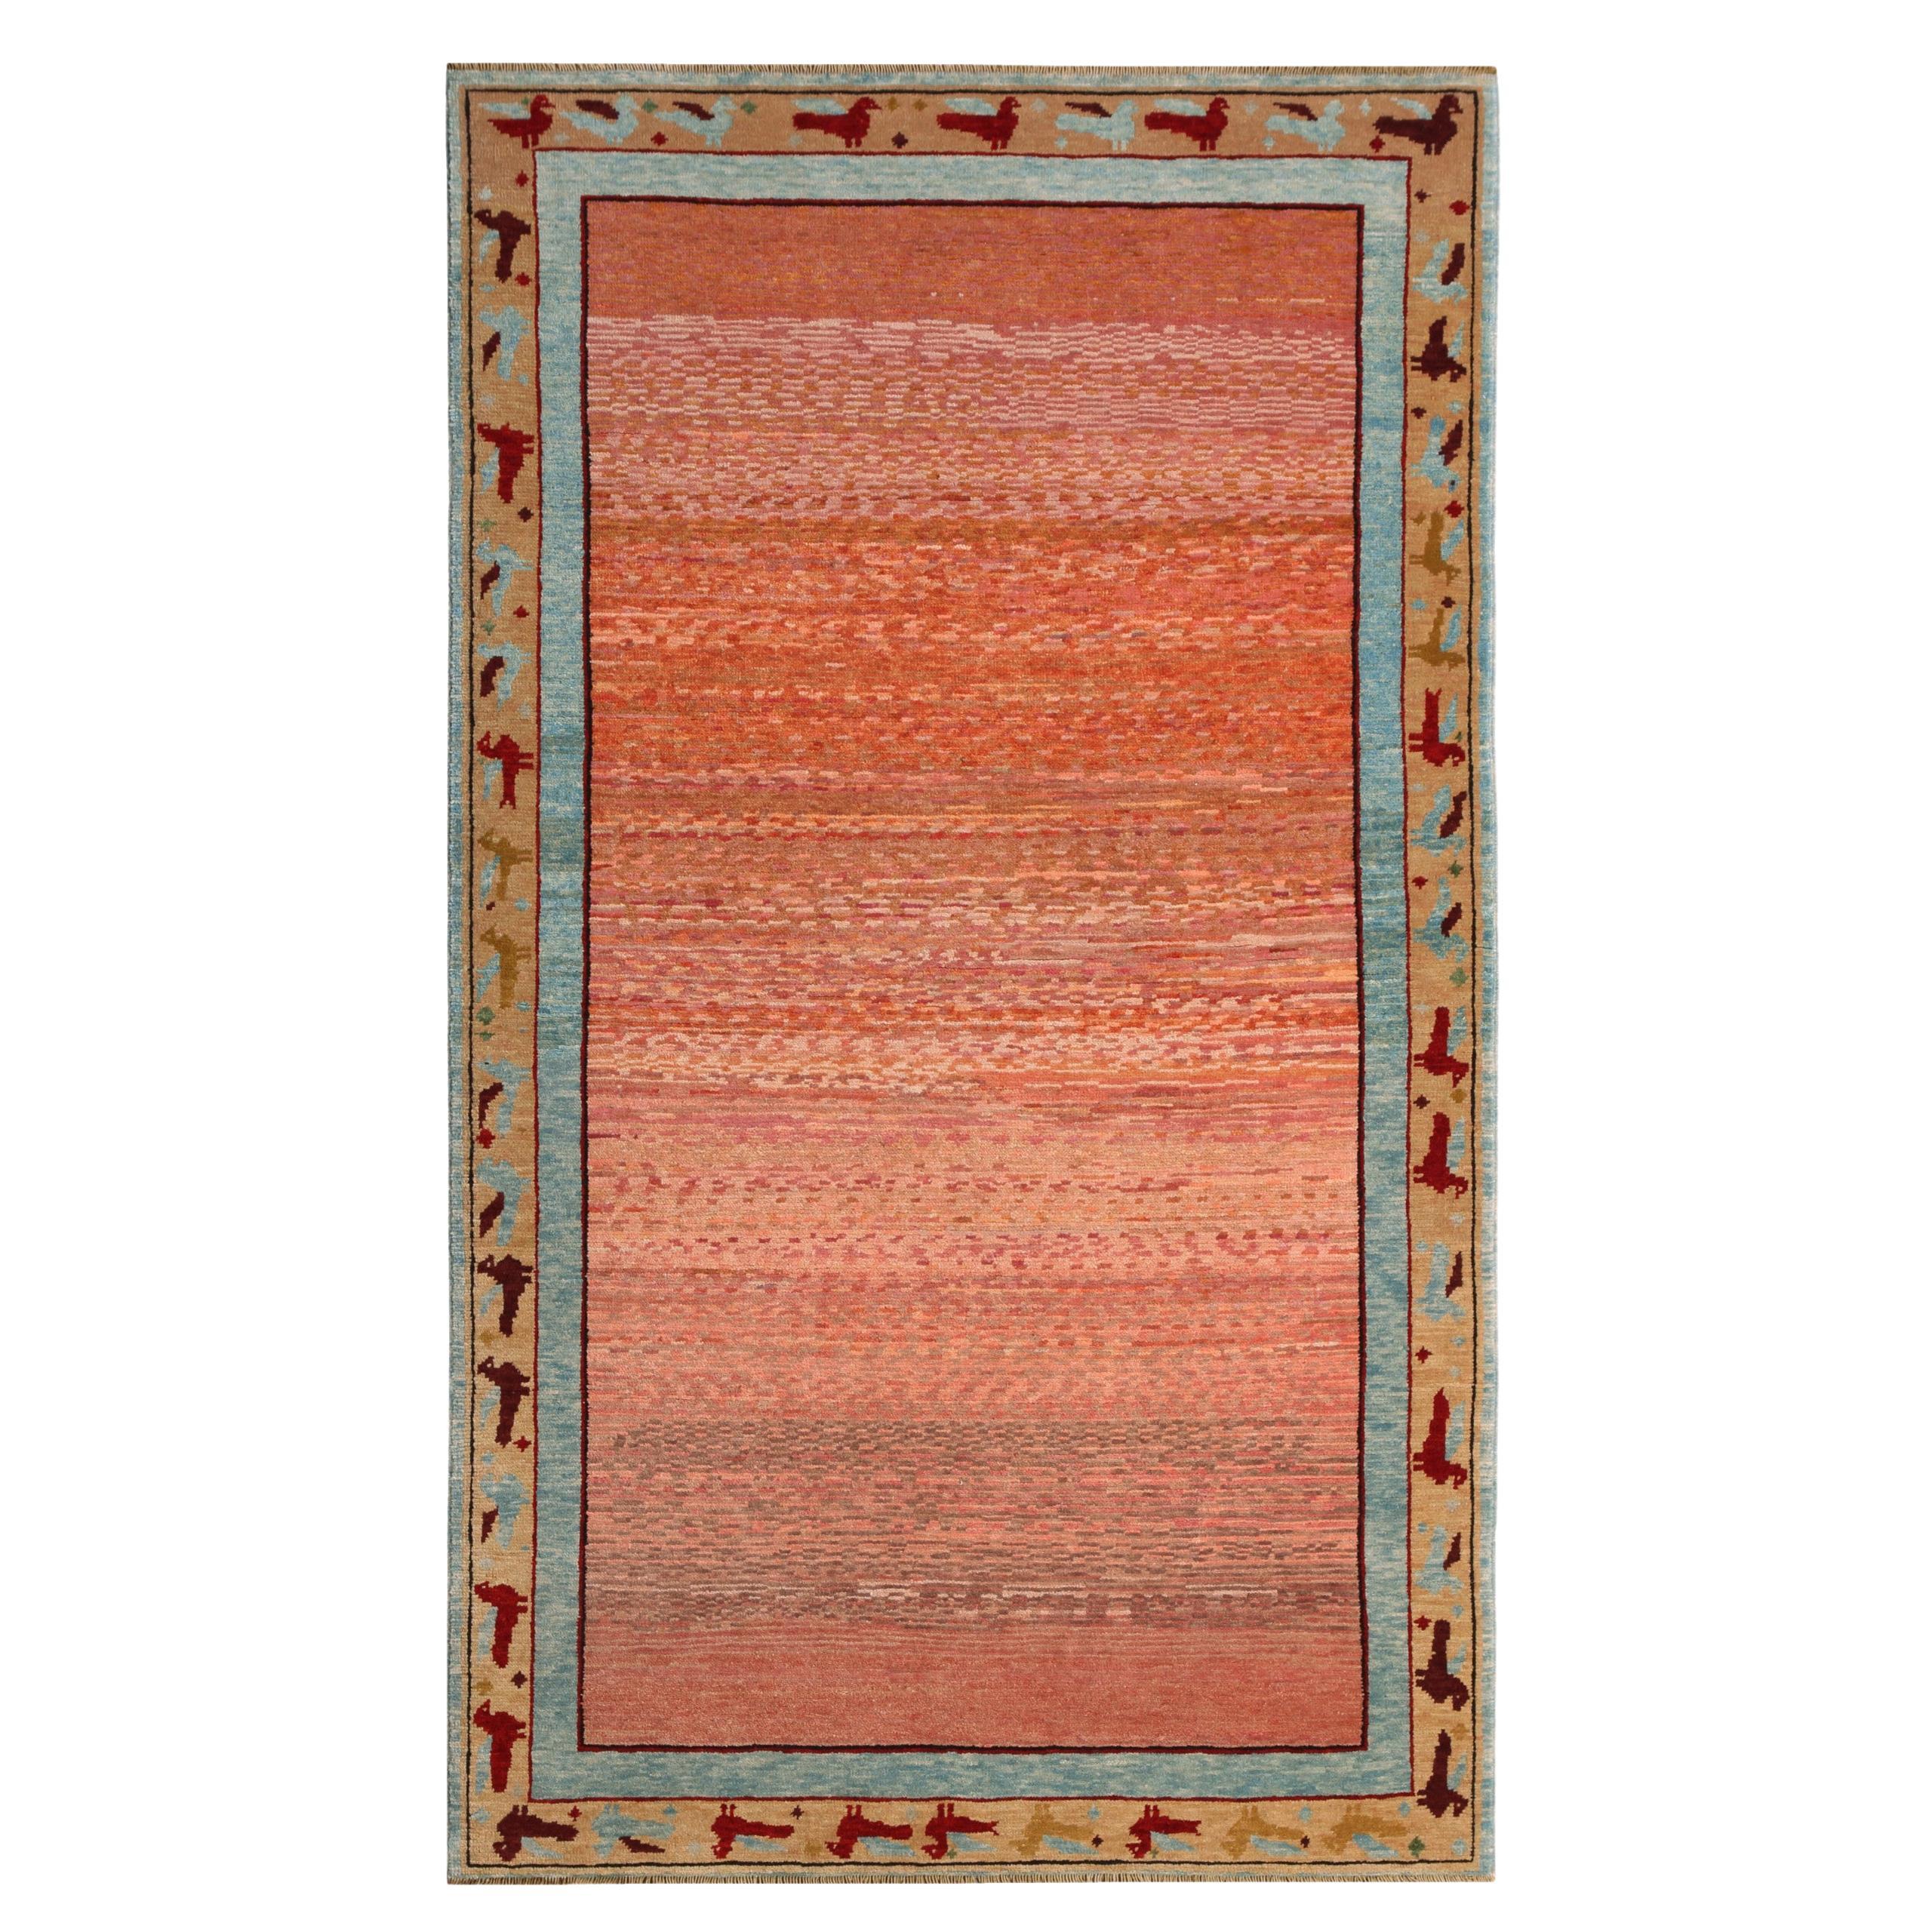 Ararat-Teppiche in Weichrosa – moderner Teppich – natürlich gefärbt